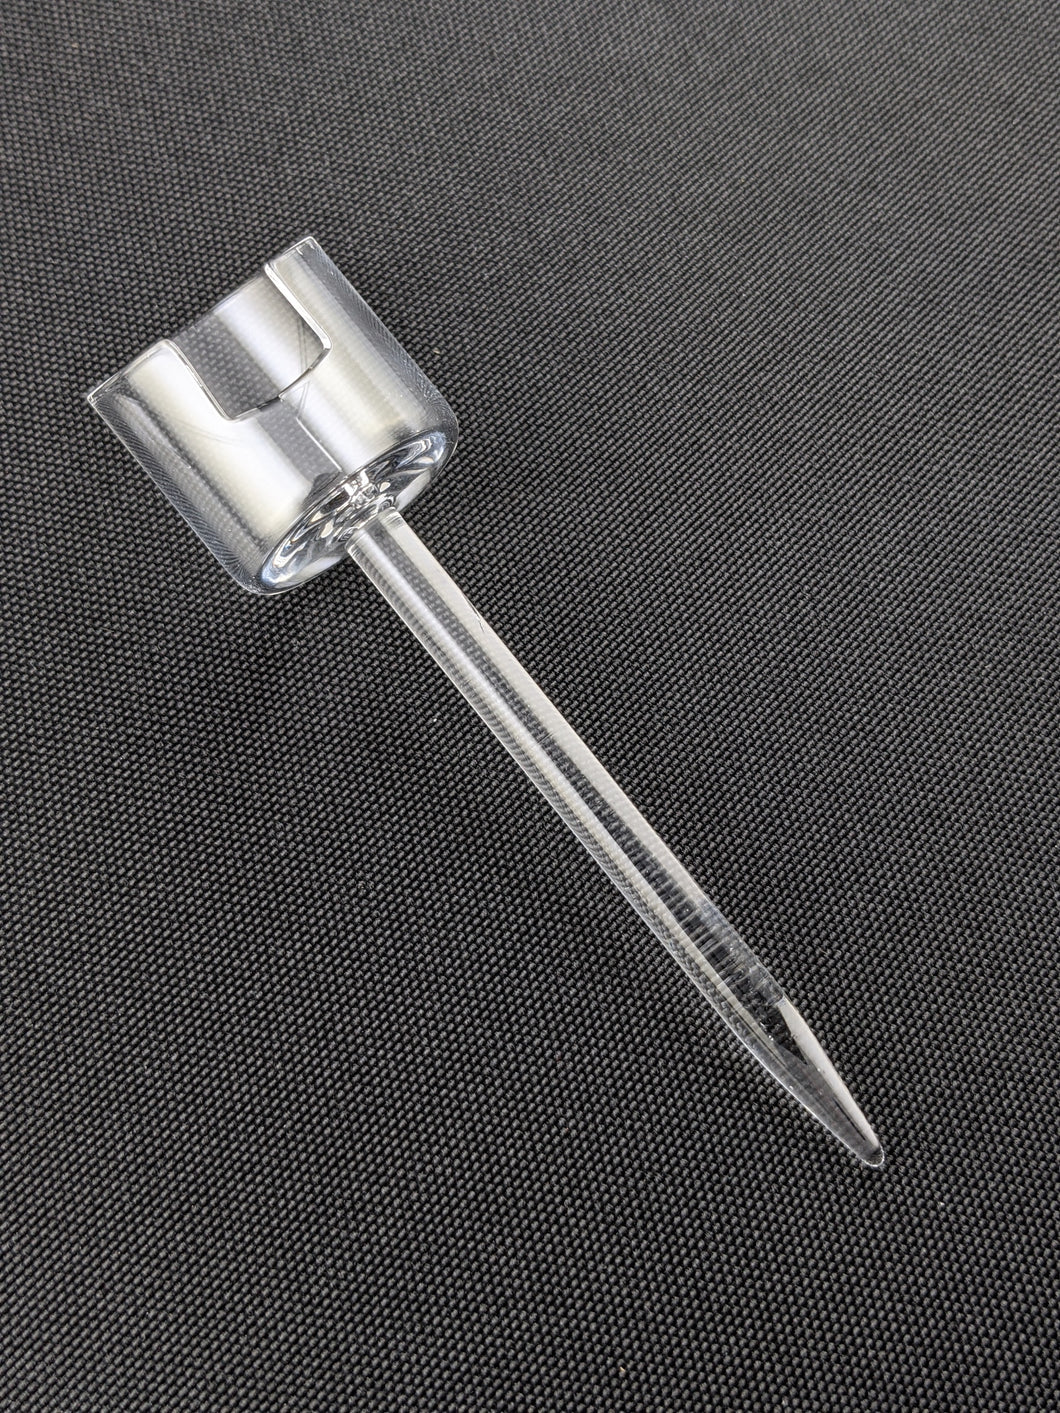 Hemper Vertical Glass Carb Cap w Pencil Dab Tool